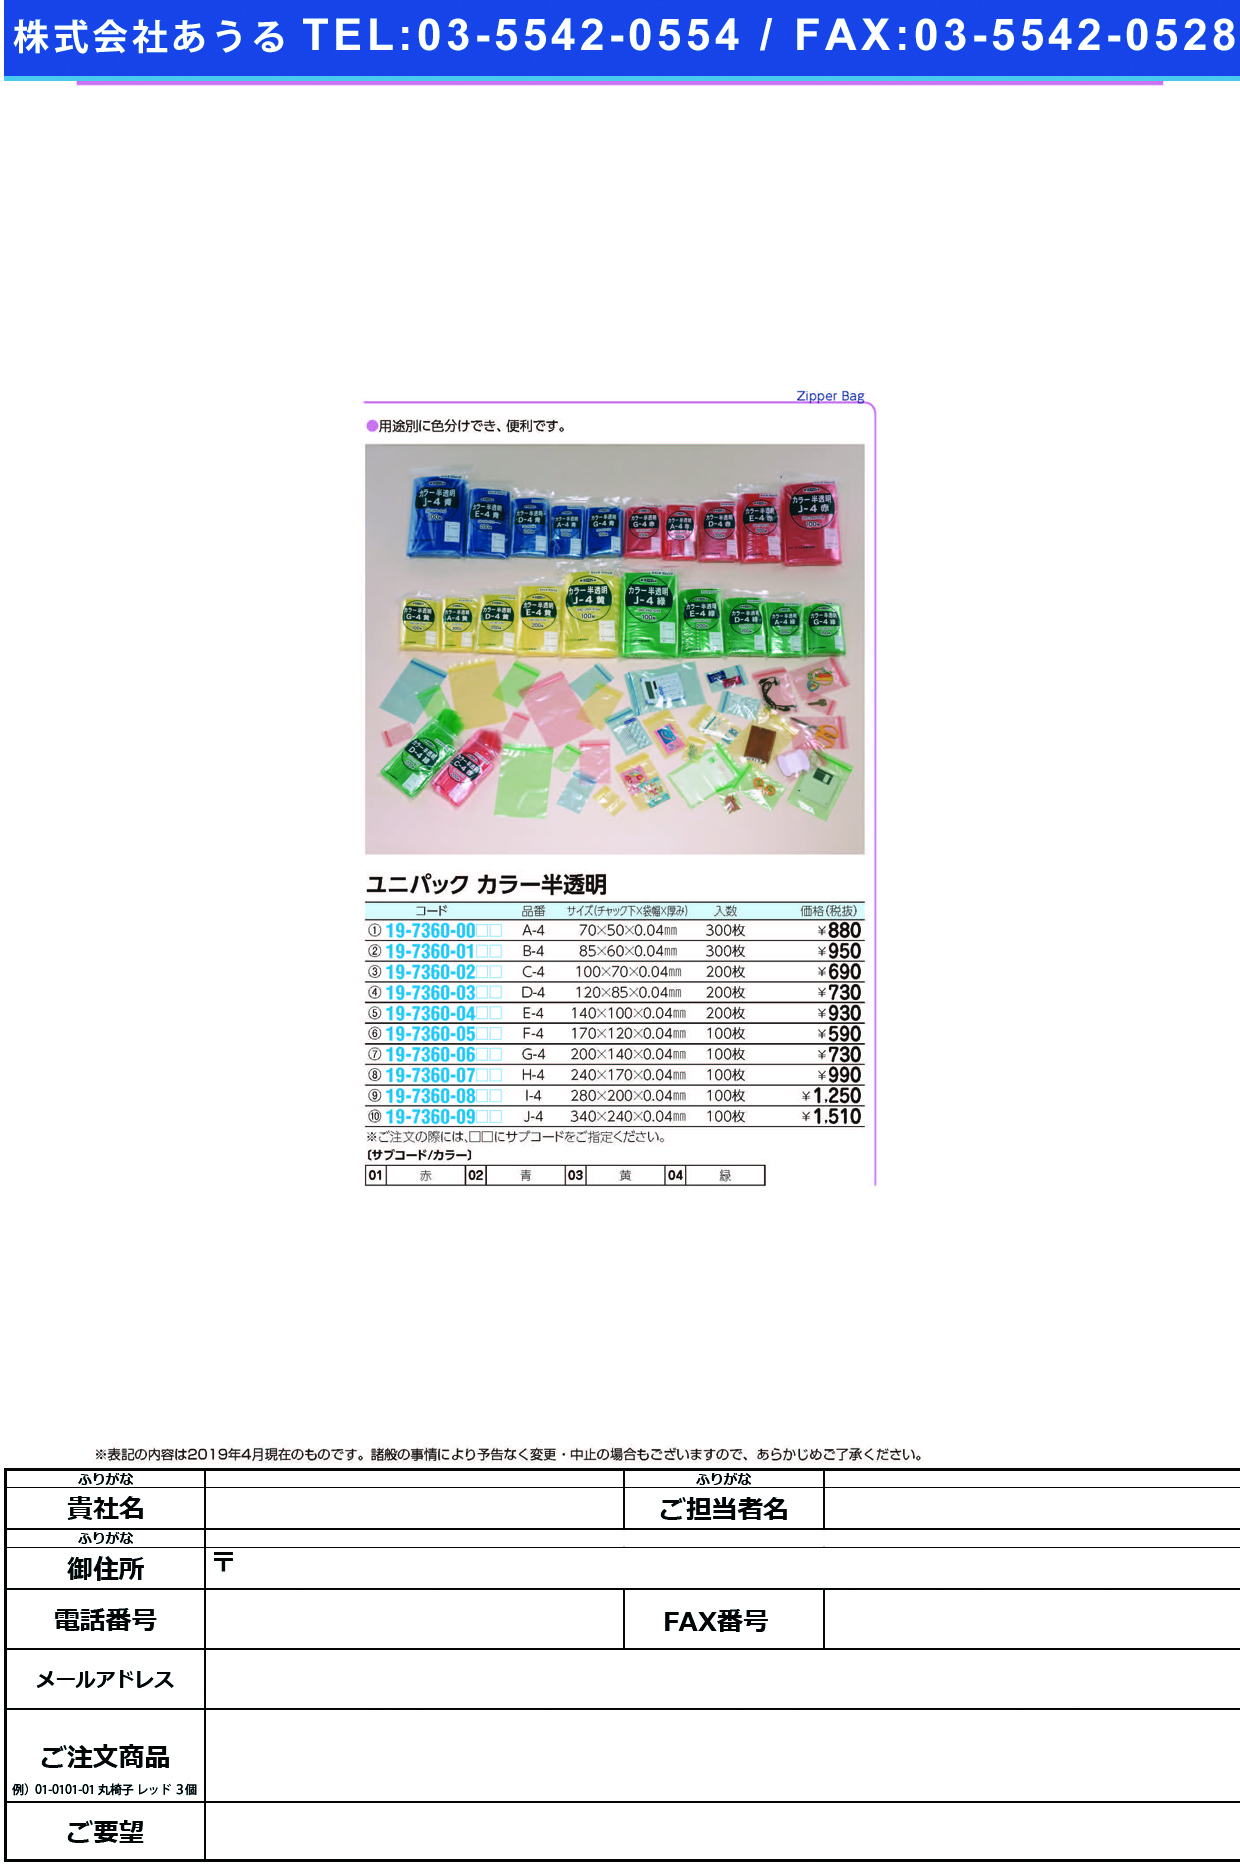 (19-7360-08)ユニパックカラー半透明 I-4(100ﾏｲｲﾘ) ﾕﾆﾊﾟｯｸｶﾗｰﾊﾝﾄｳﾒｲ 赤【1袋単位】【2019年カタログ商品】